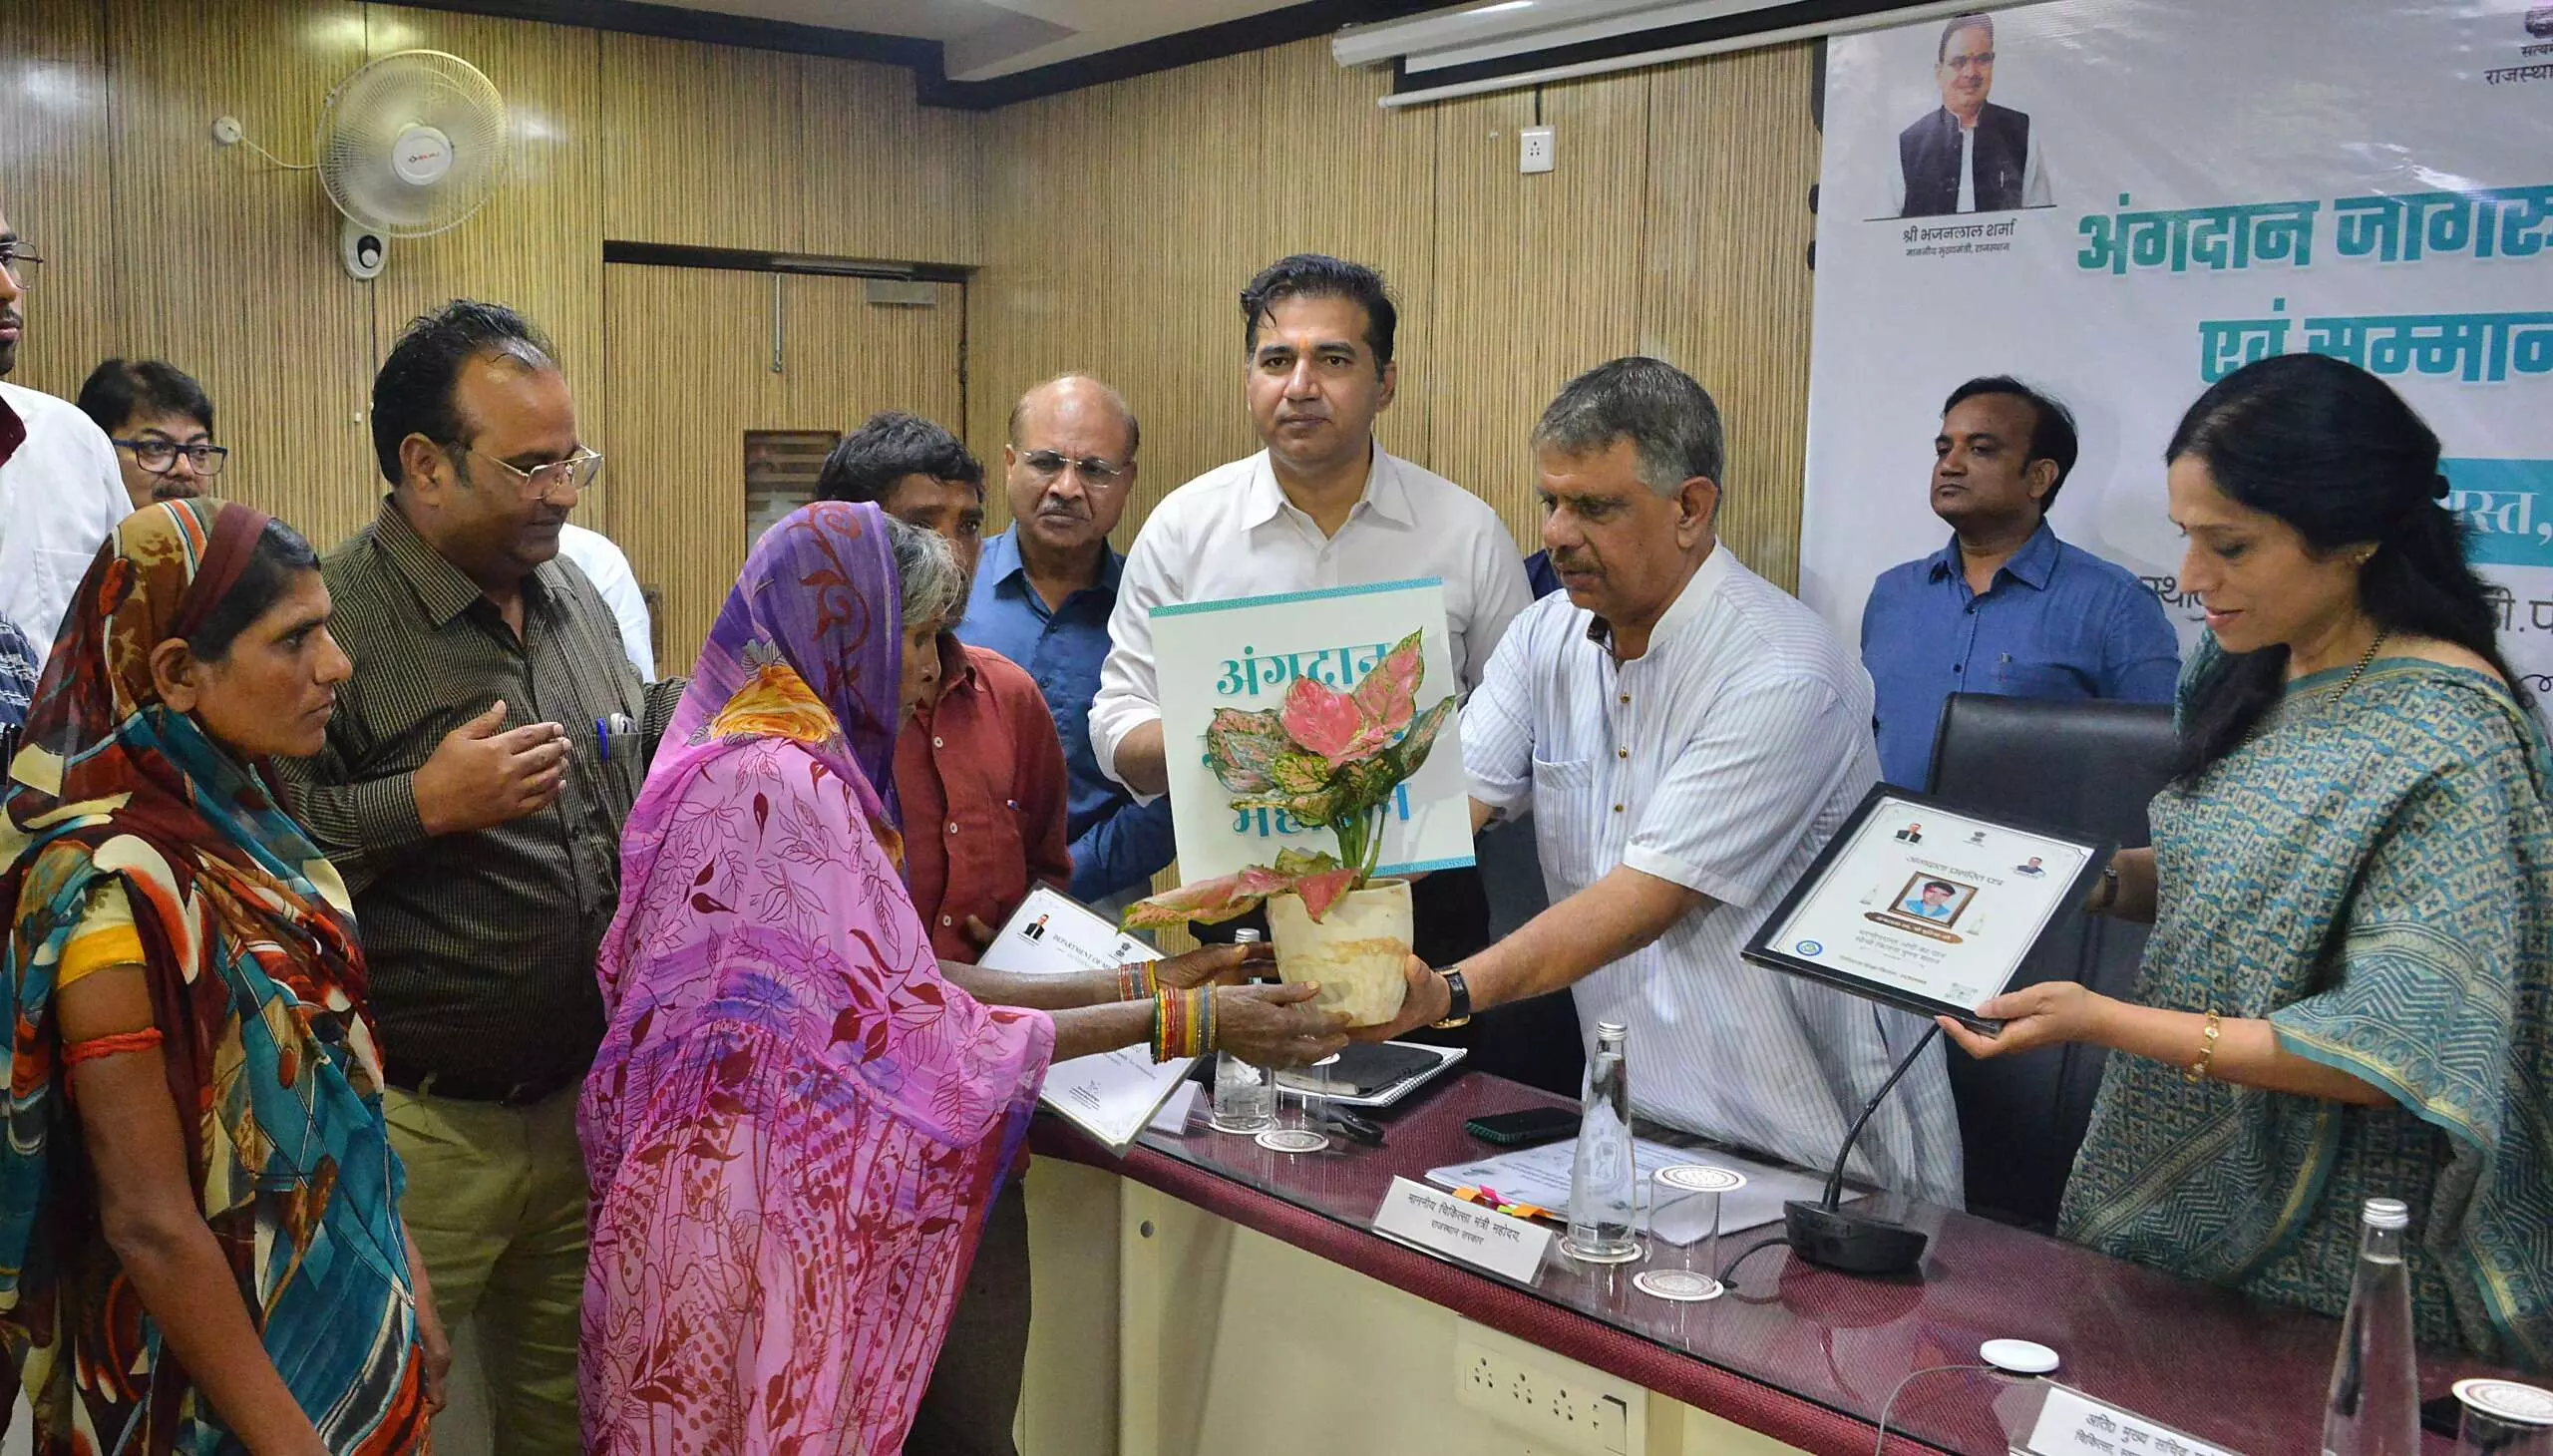 Jaipur: जिलों को किया सम्मानित अंगदान मानवता की सेवा के लिए सर्वोच्च योगदान